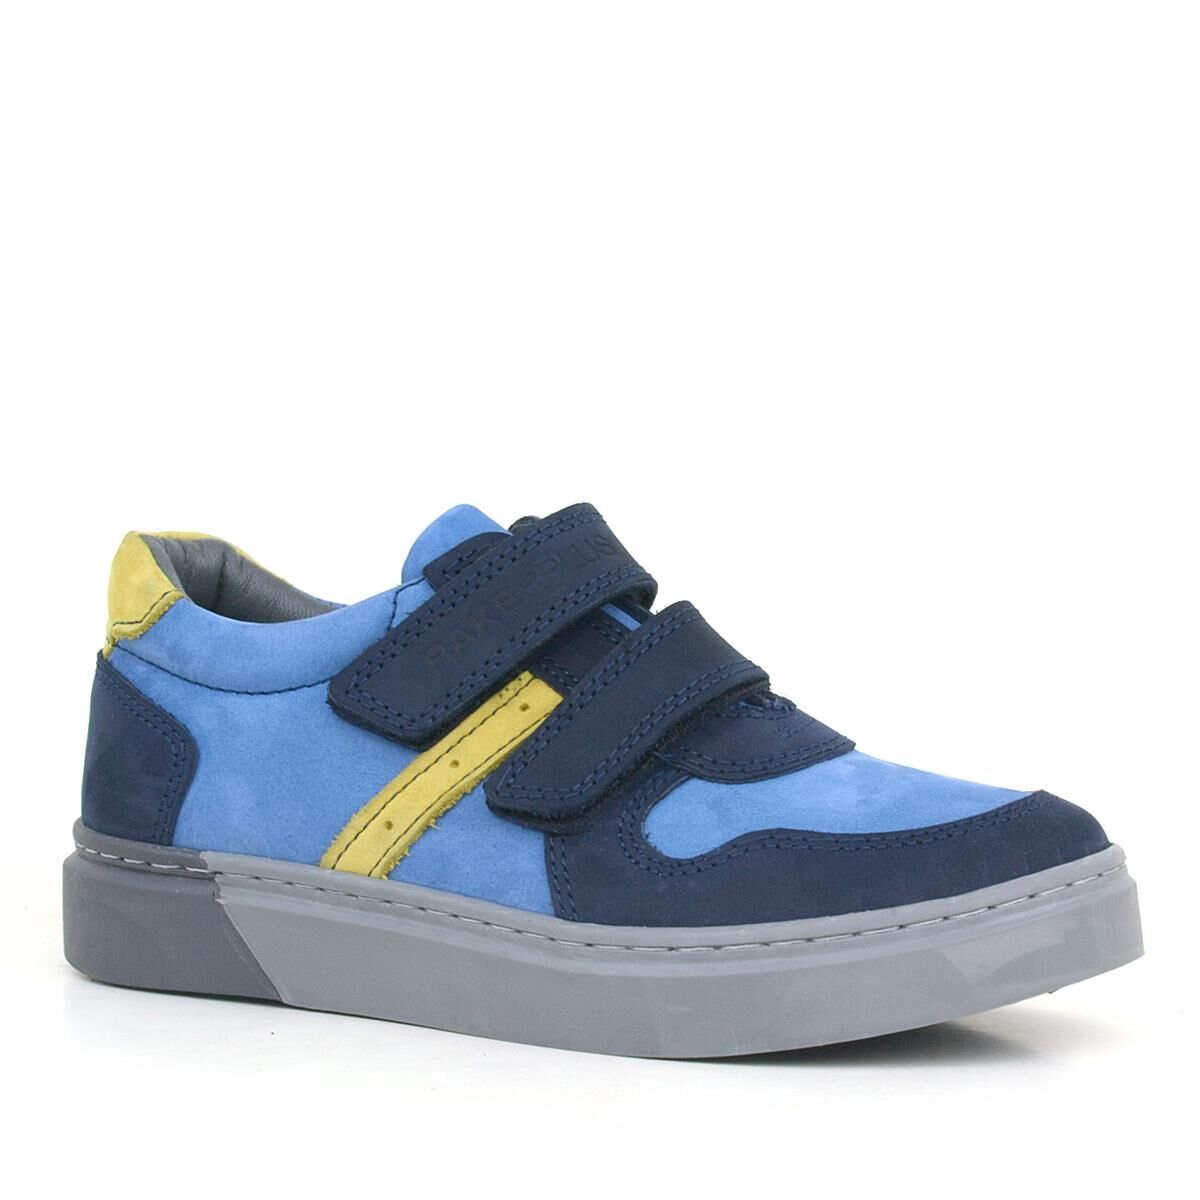 Спортивная обувь для мальчиков Rakerplus из натуральной кожи темно-синего цвета на липучке